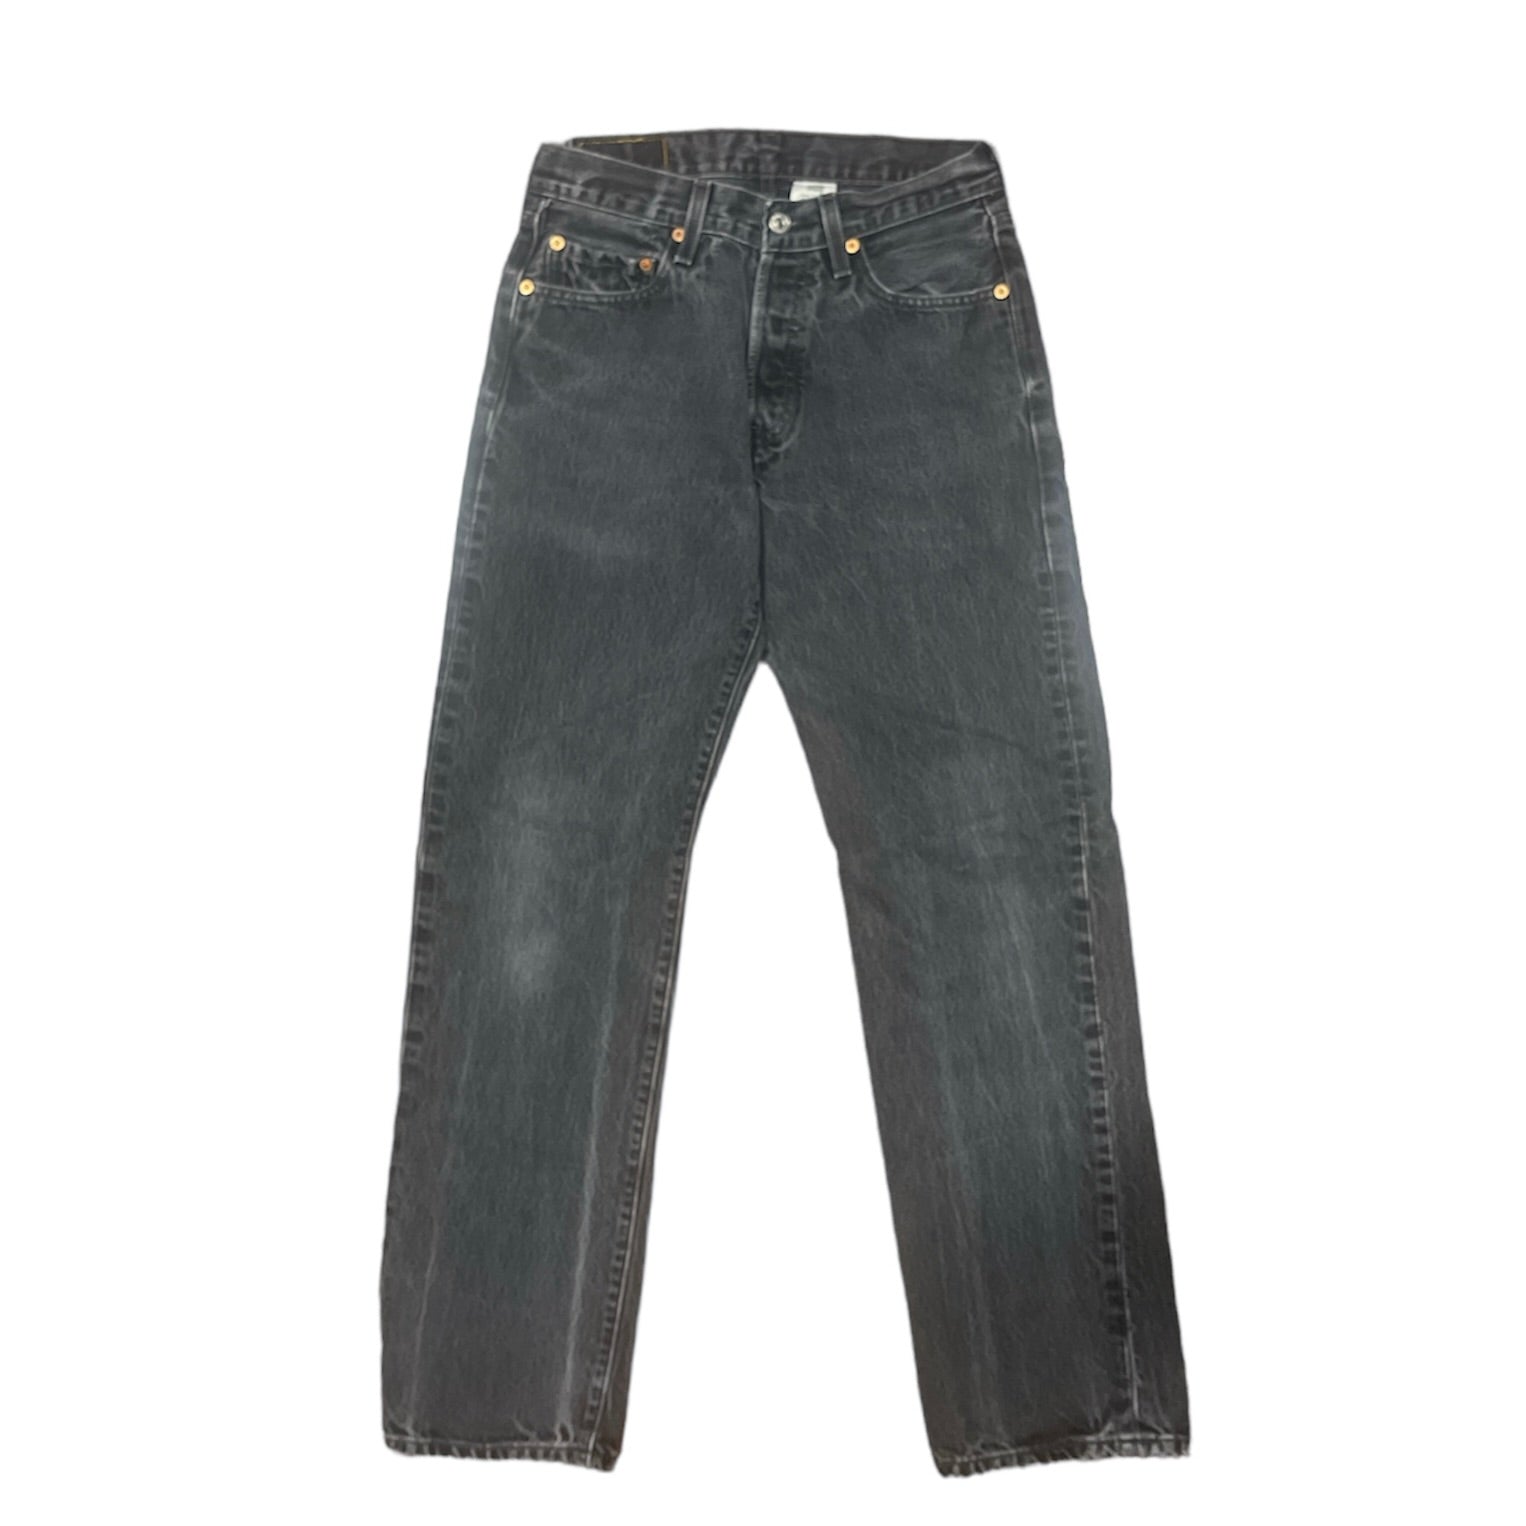 Vintage Levis 501 Black Jeans (W29/L32)